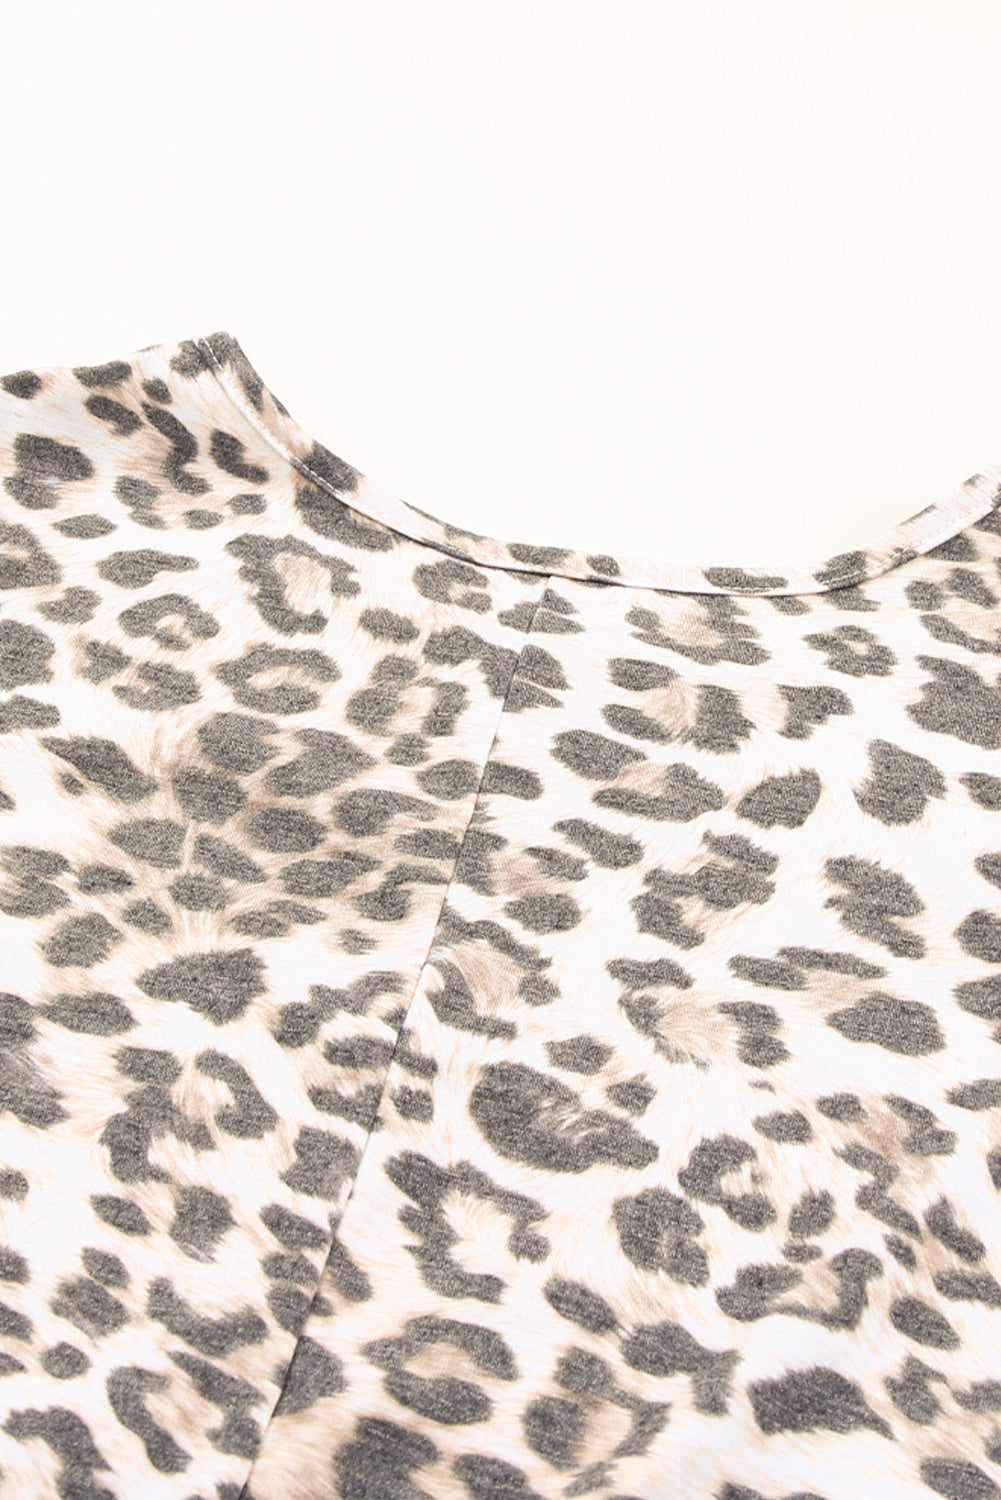 Mehrlagiges, ärmelloses Minikleid mit Leopardenmuster und Rüschen